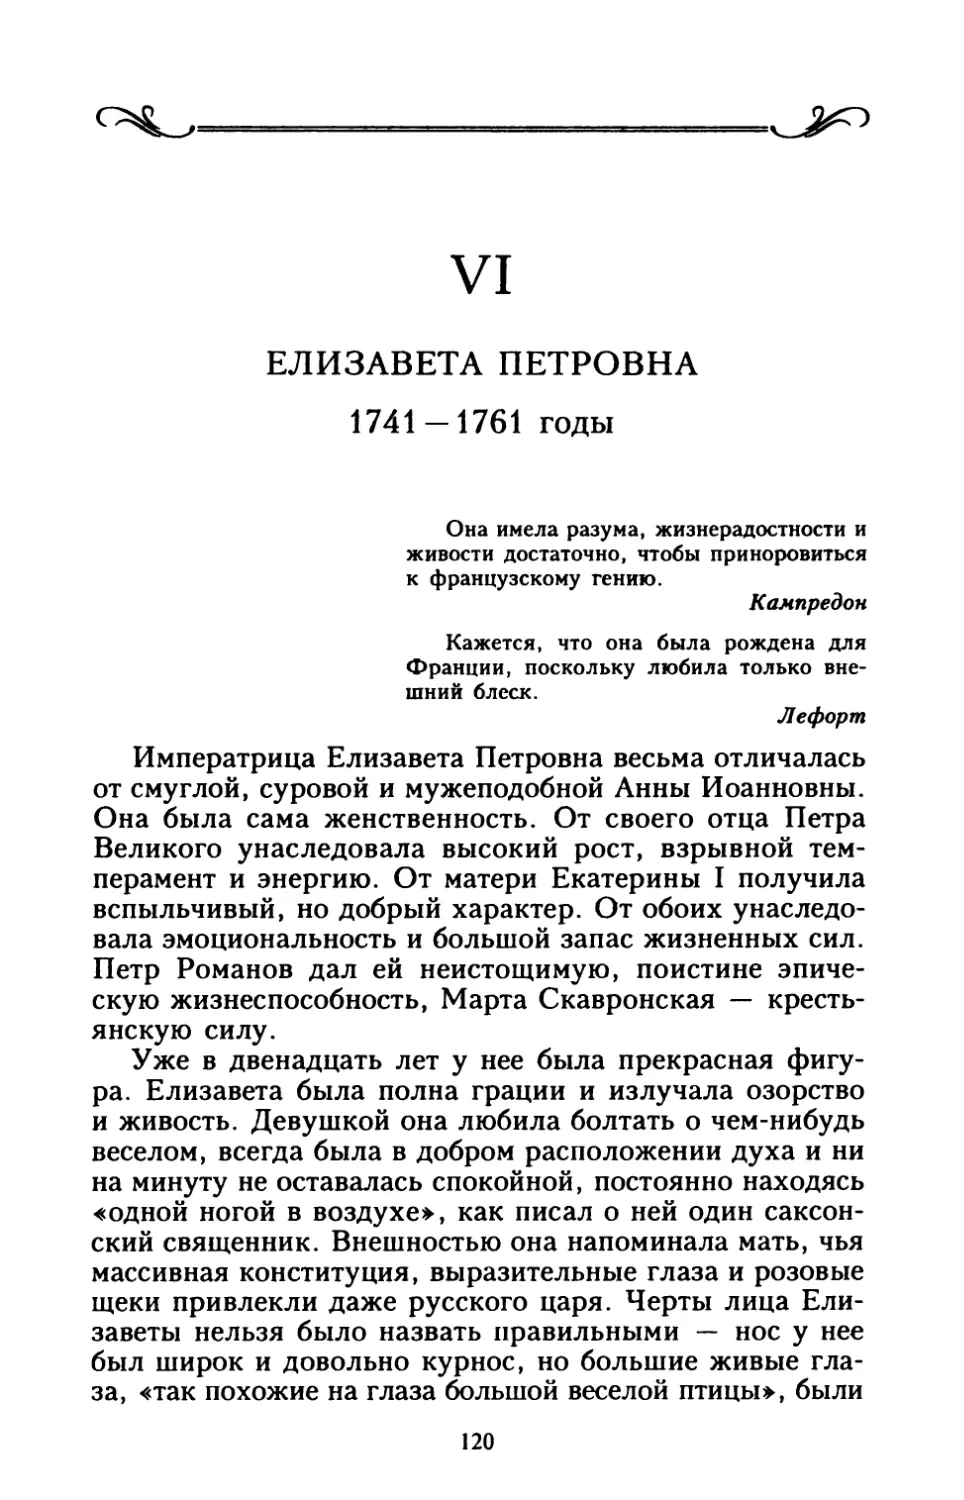 VI. ЕЛИЗАВЕТА ПЕТРОВНА 1741 — 1761 годы